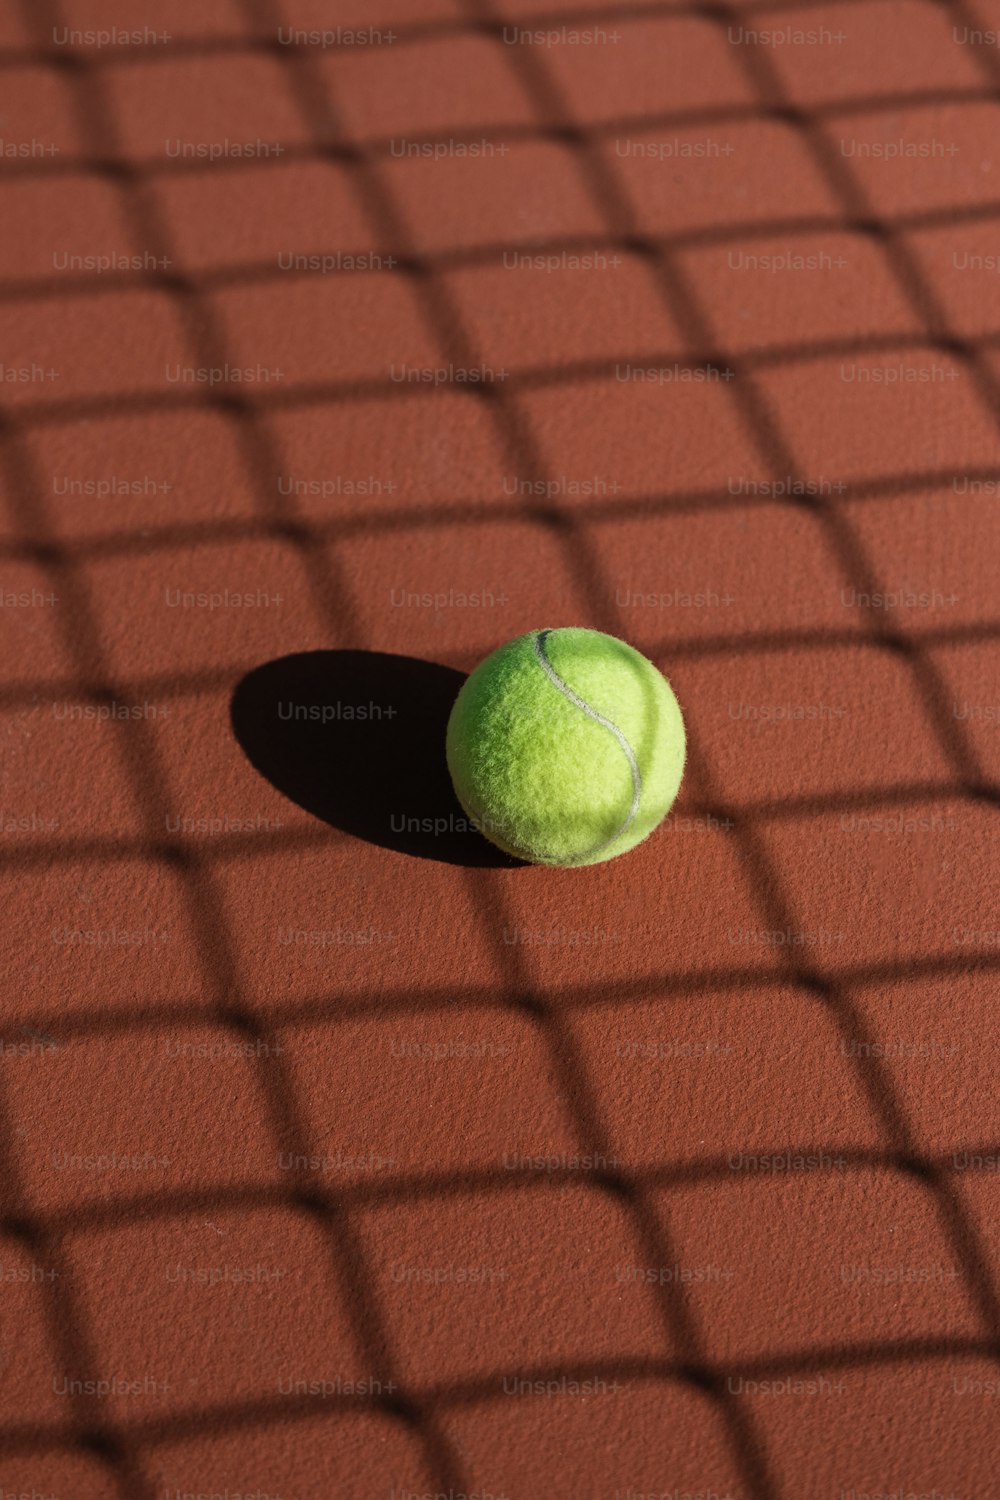 una pelota de tenis sentada en una cancha de tenis